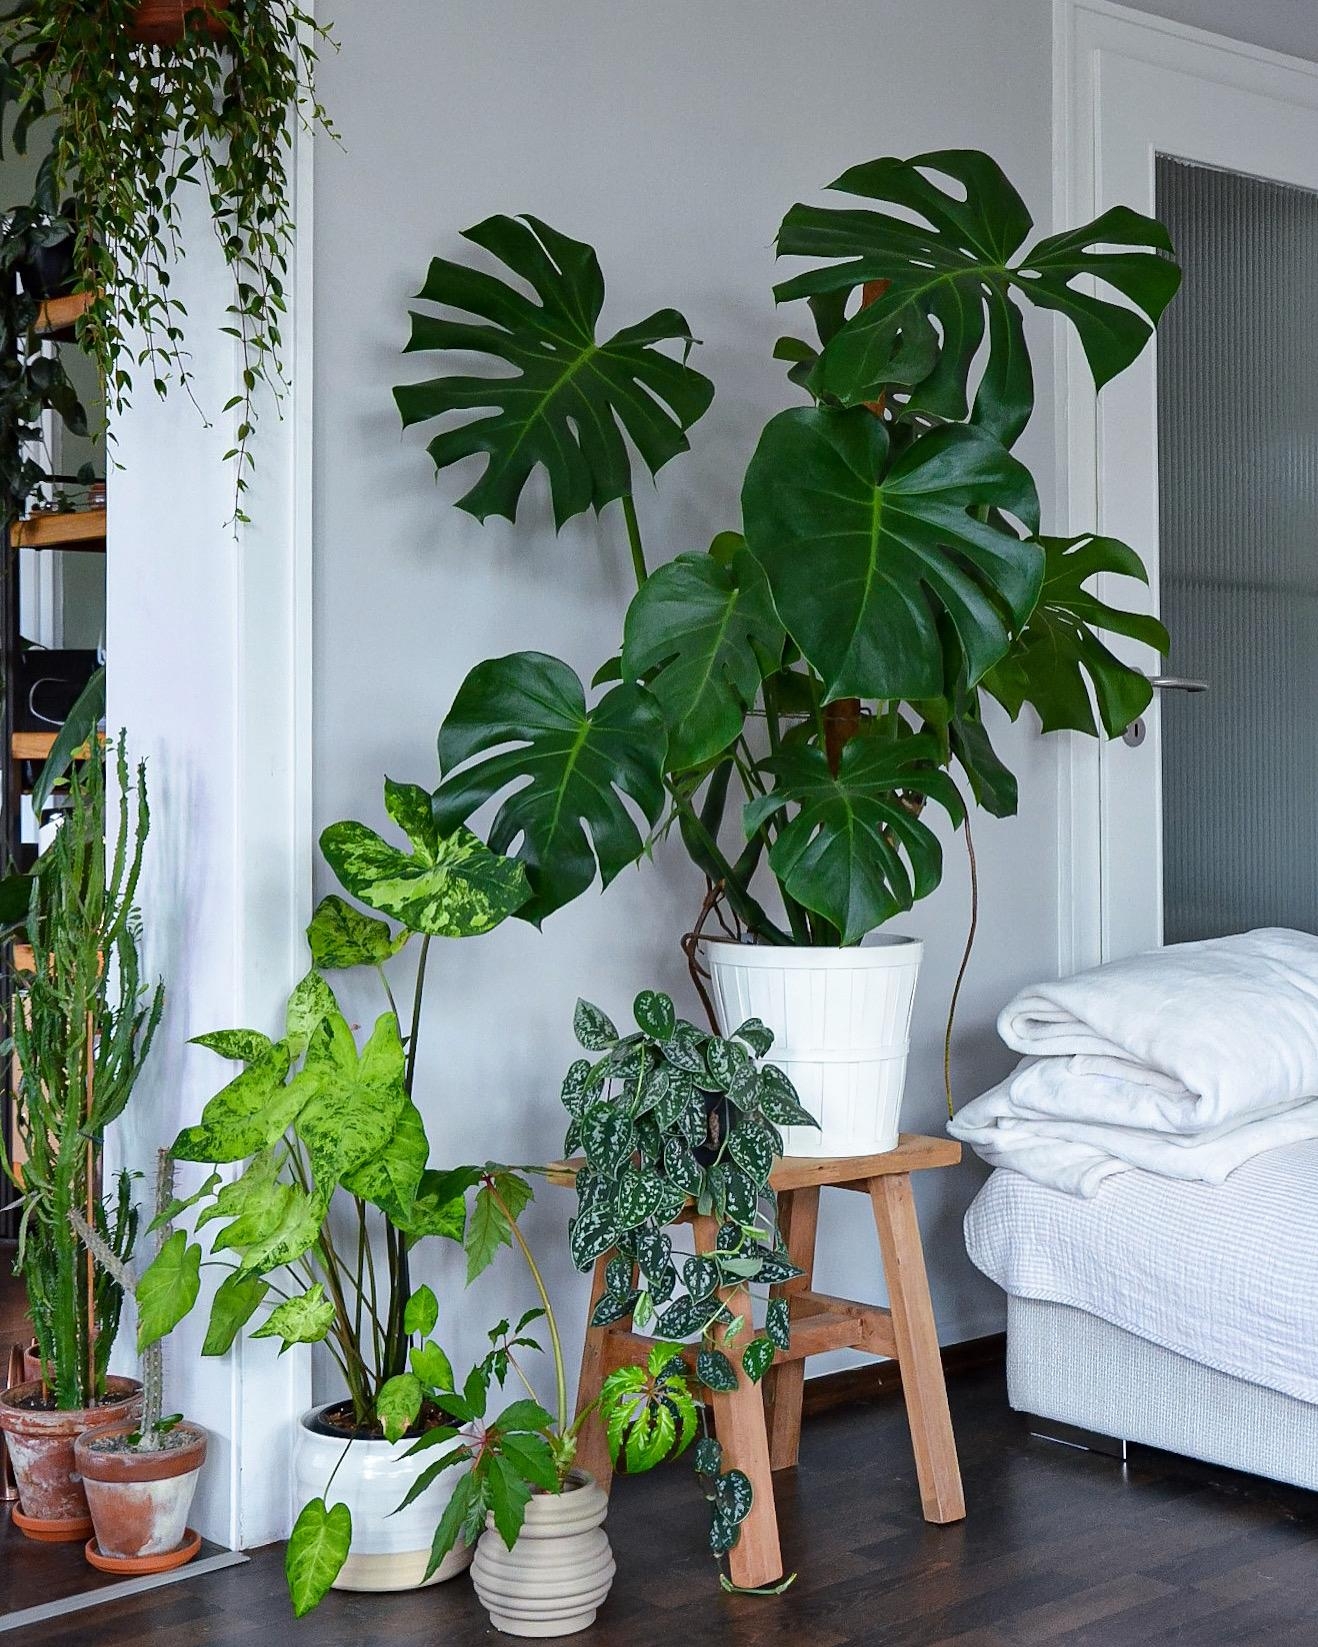 #altbau #pflanzenliebe #pflanzen #wohnzimmer #livingroom #jungle #interiorinspo